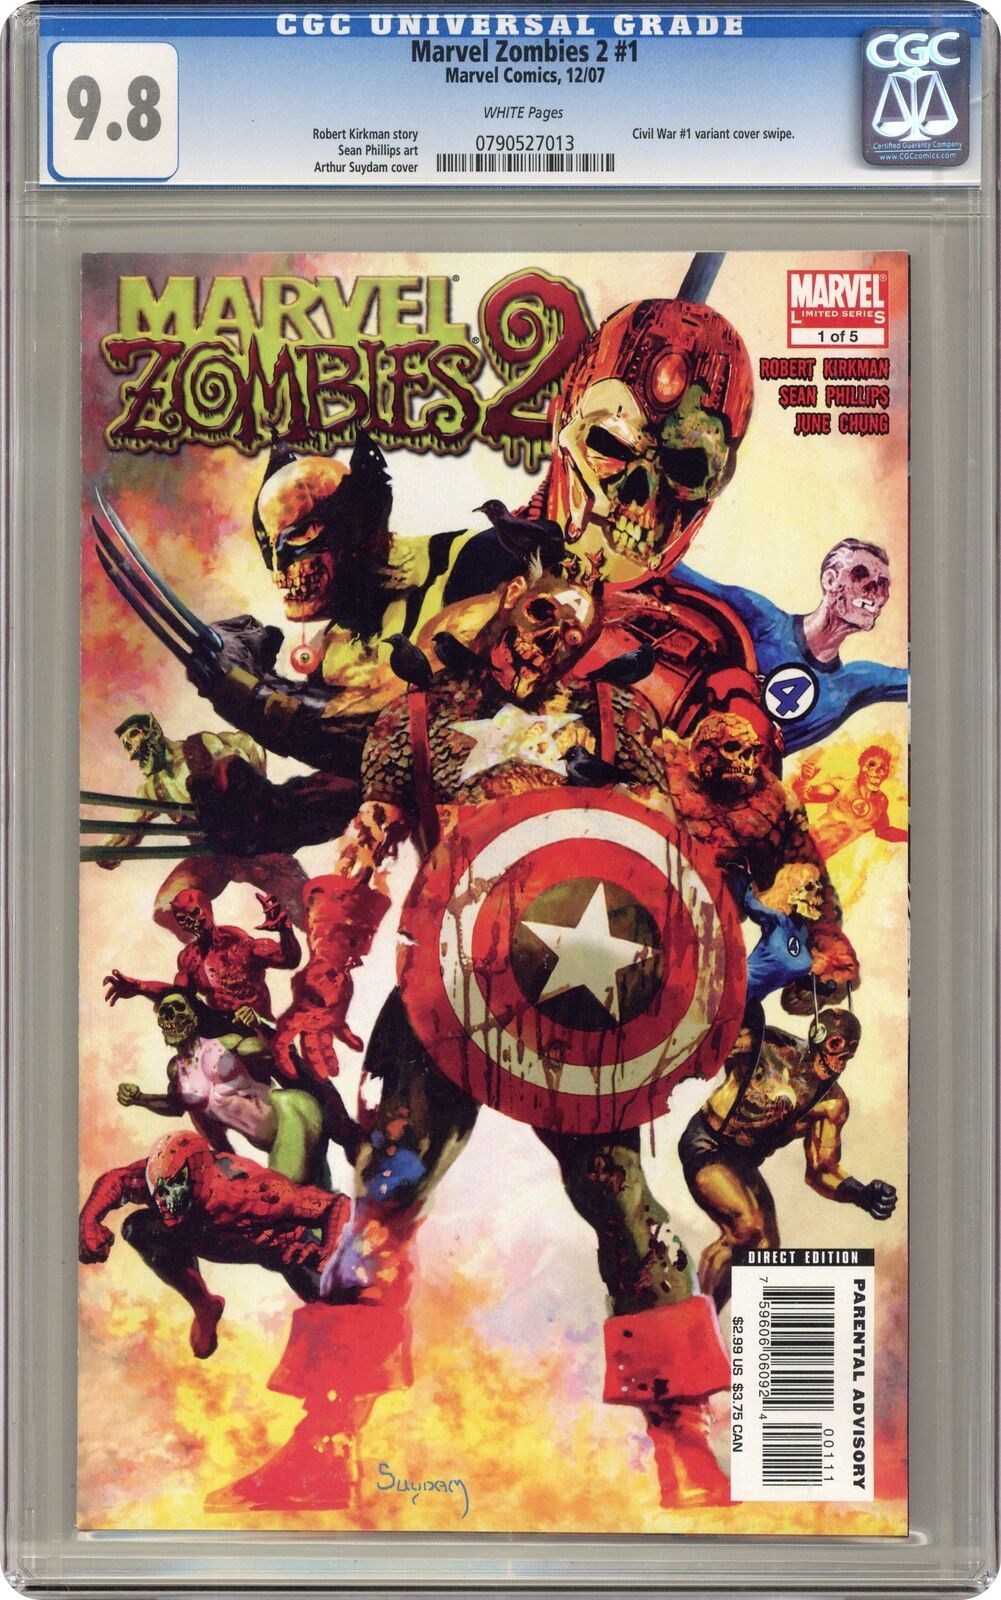 Marvel Zombies 2 #1 CGC 9.8 2007 0790527013